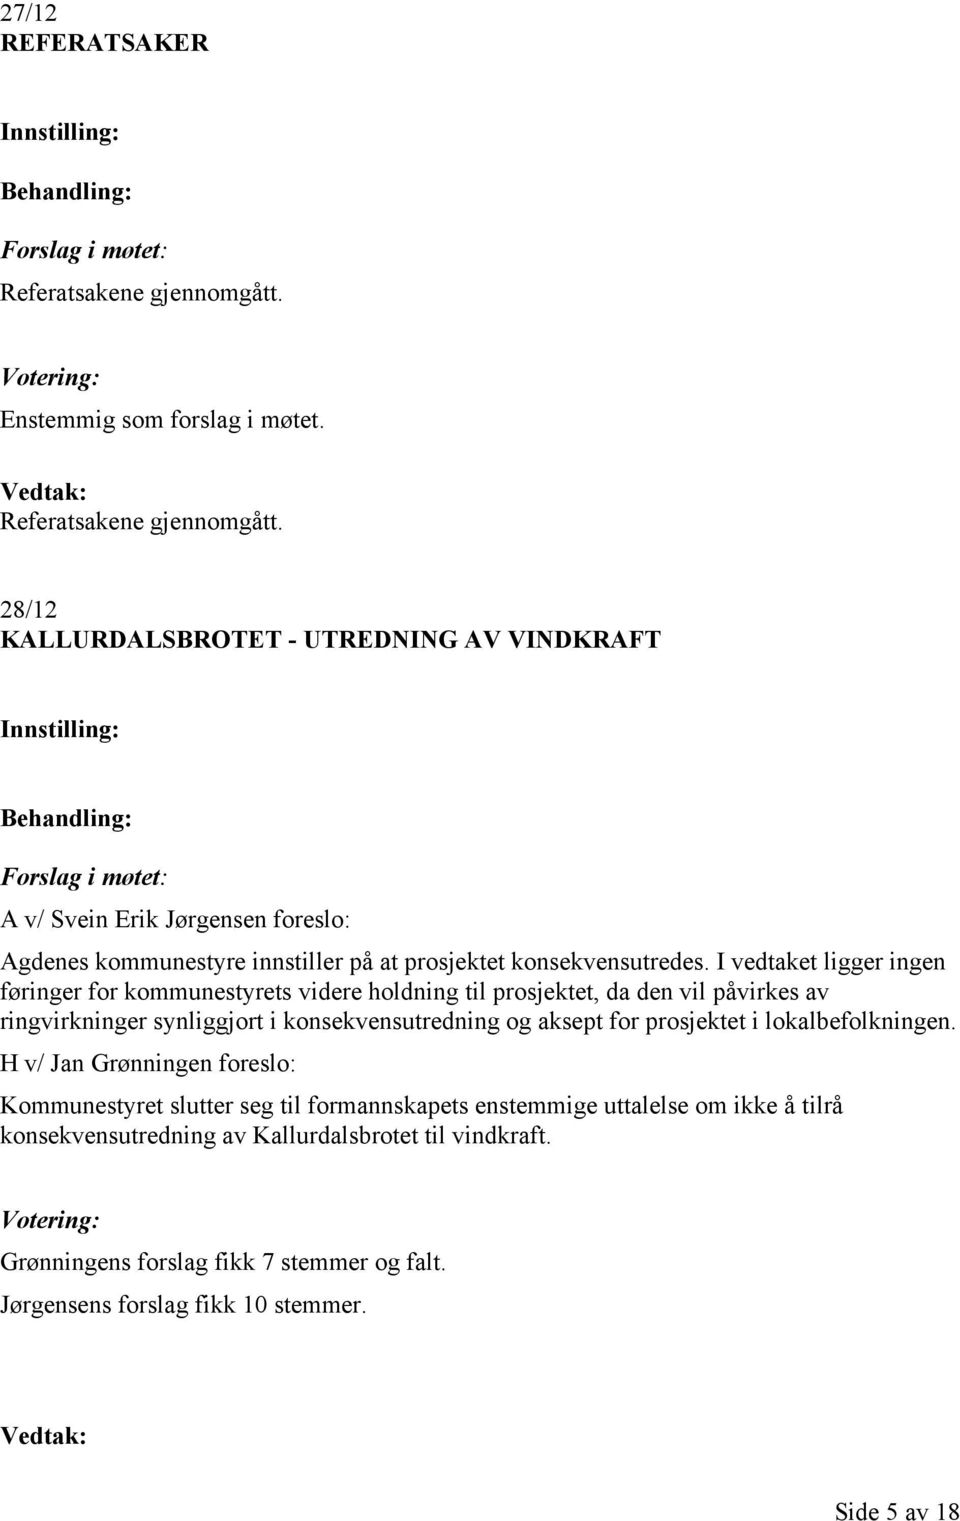 28/12 KALLURDALSBROTET - UTREDNING AV VINDKRAFT A v/ Svein Erik Jørgensen foreslo: Agdenes kommunestyre innstiller på at prosjektet konsekvensutredes.